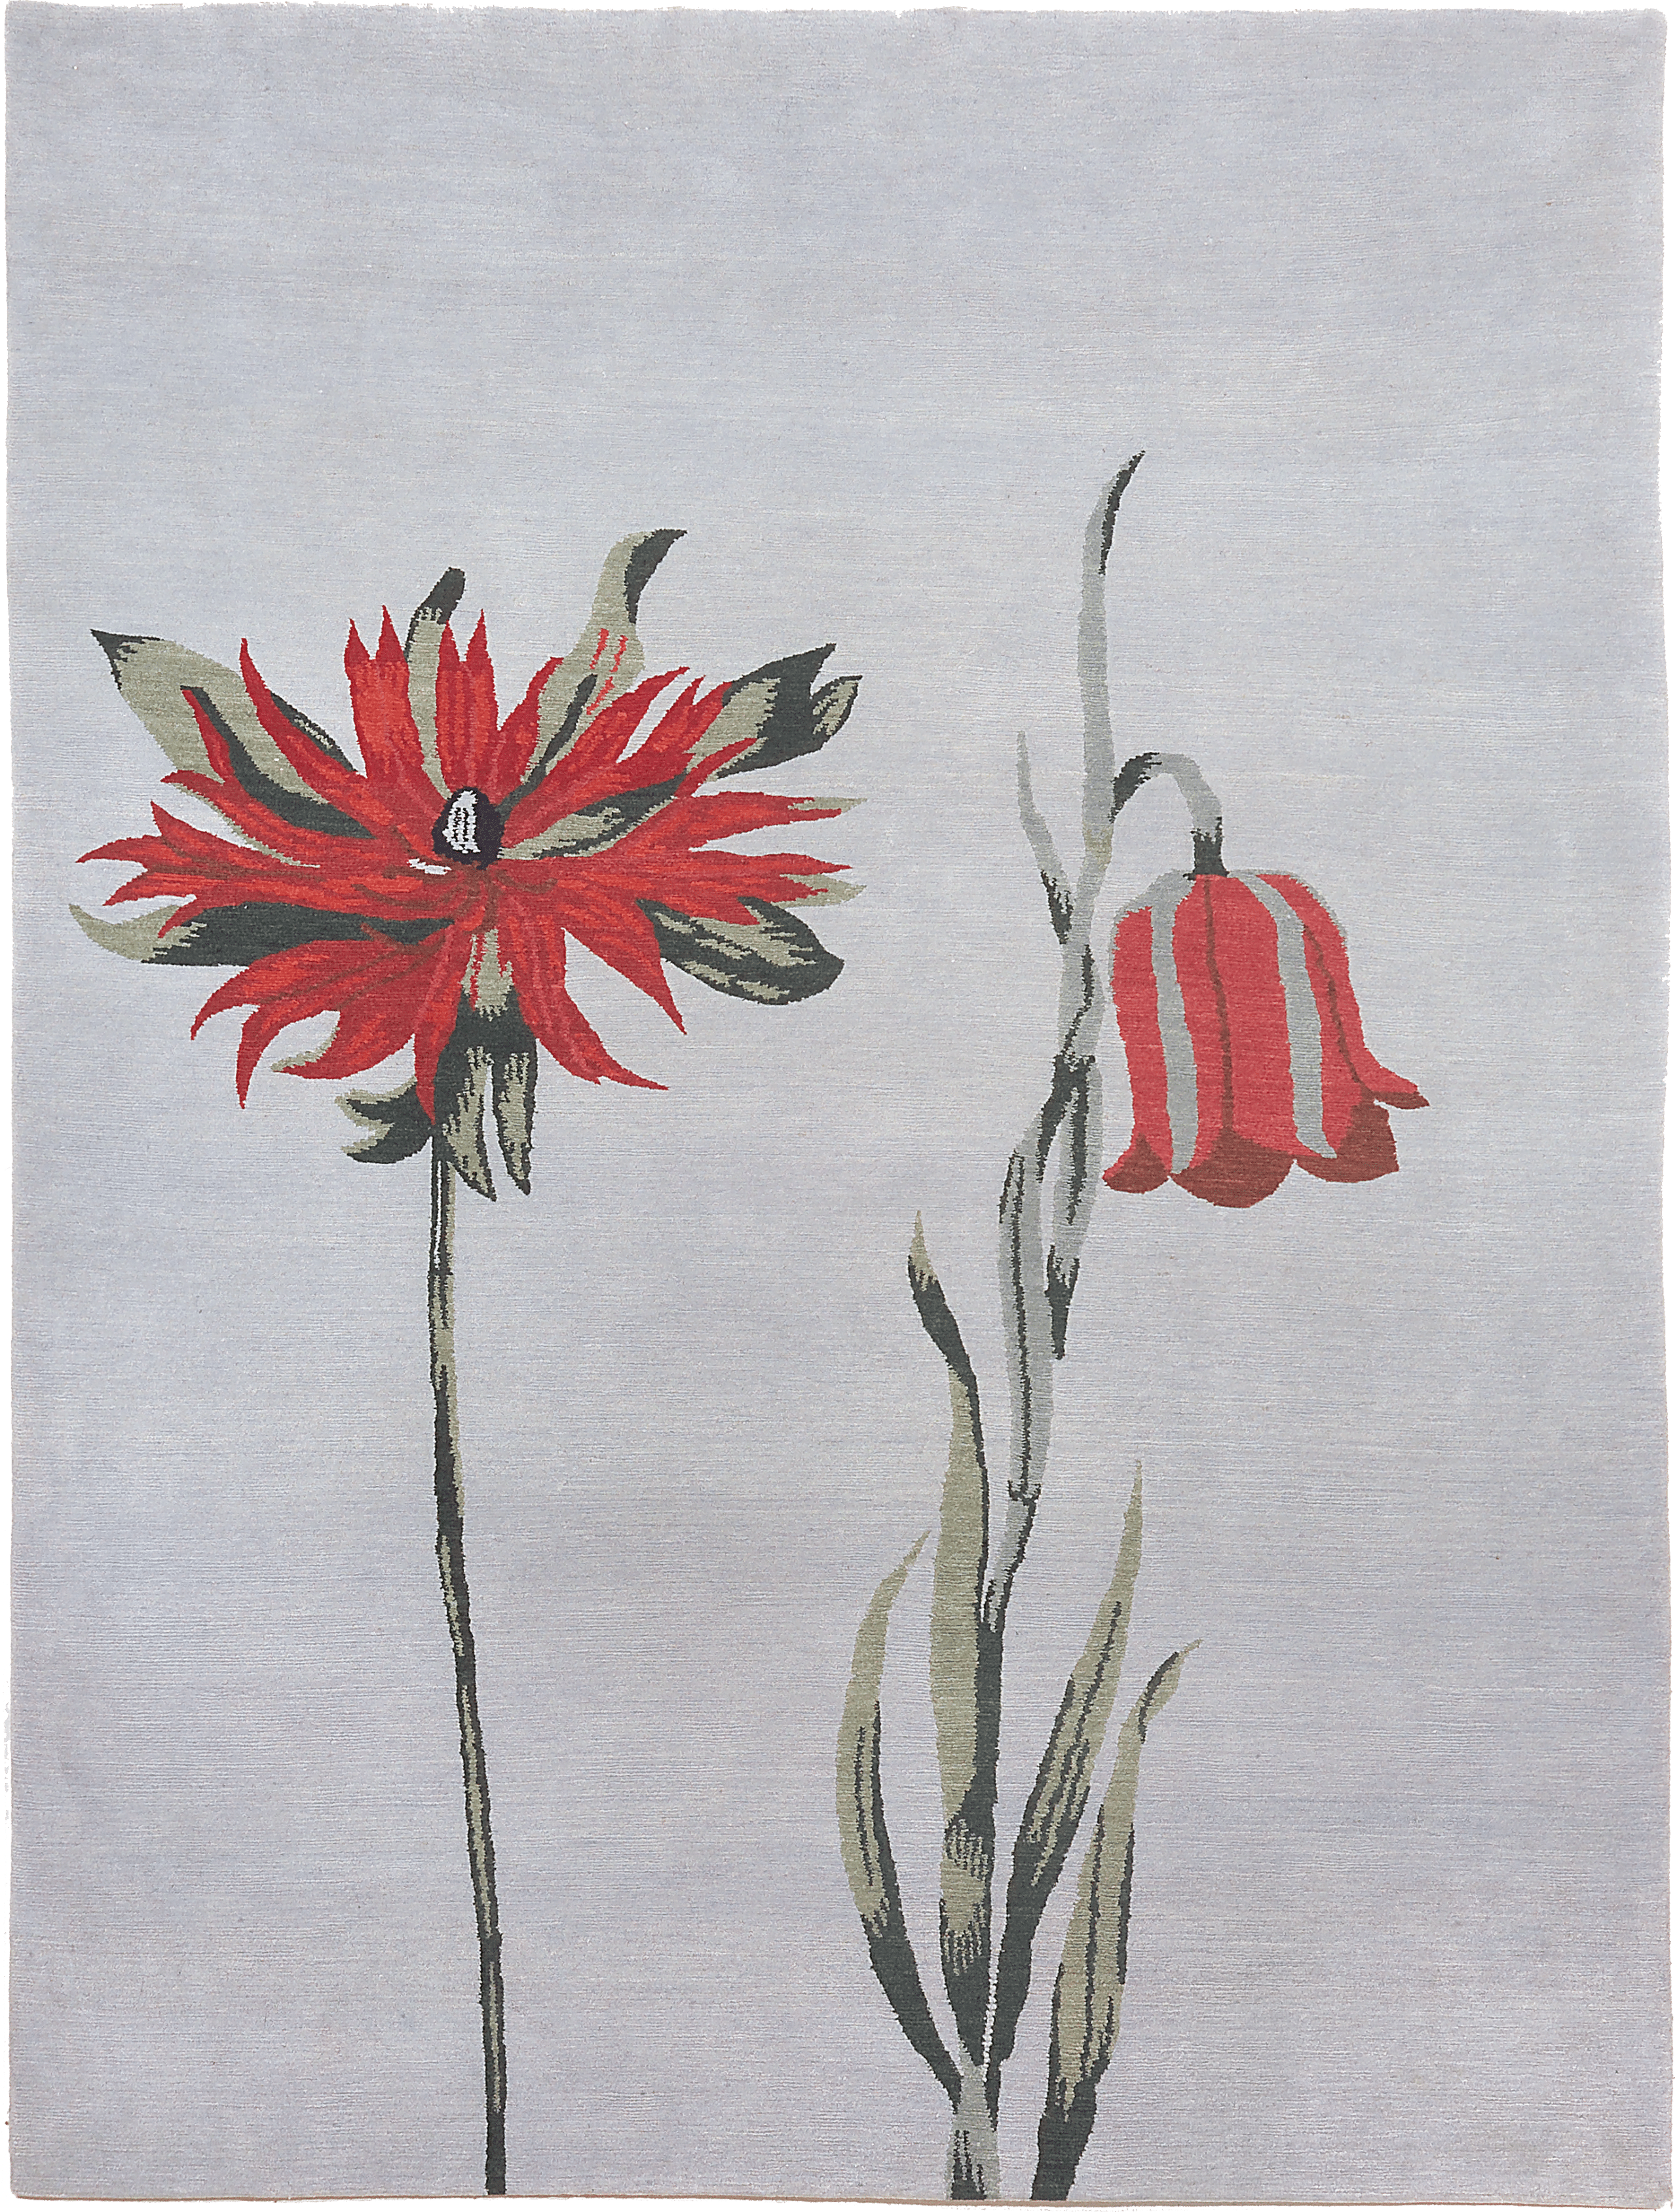 Geba Teppich "Tribu" mit 2 Blumen in Rot auf grauem Hintergrund, aus Nepal, 100 Knoten, gefertigt aus tibetischer Hochlandschafwolle - Produktbild - Geba Teppich